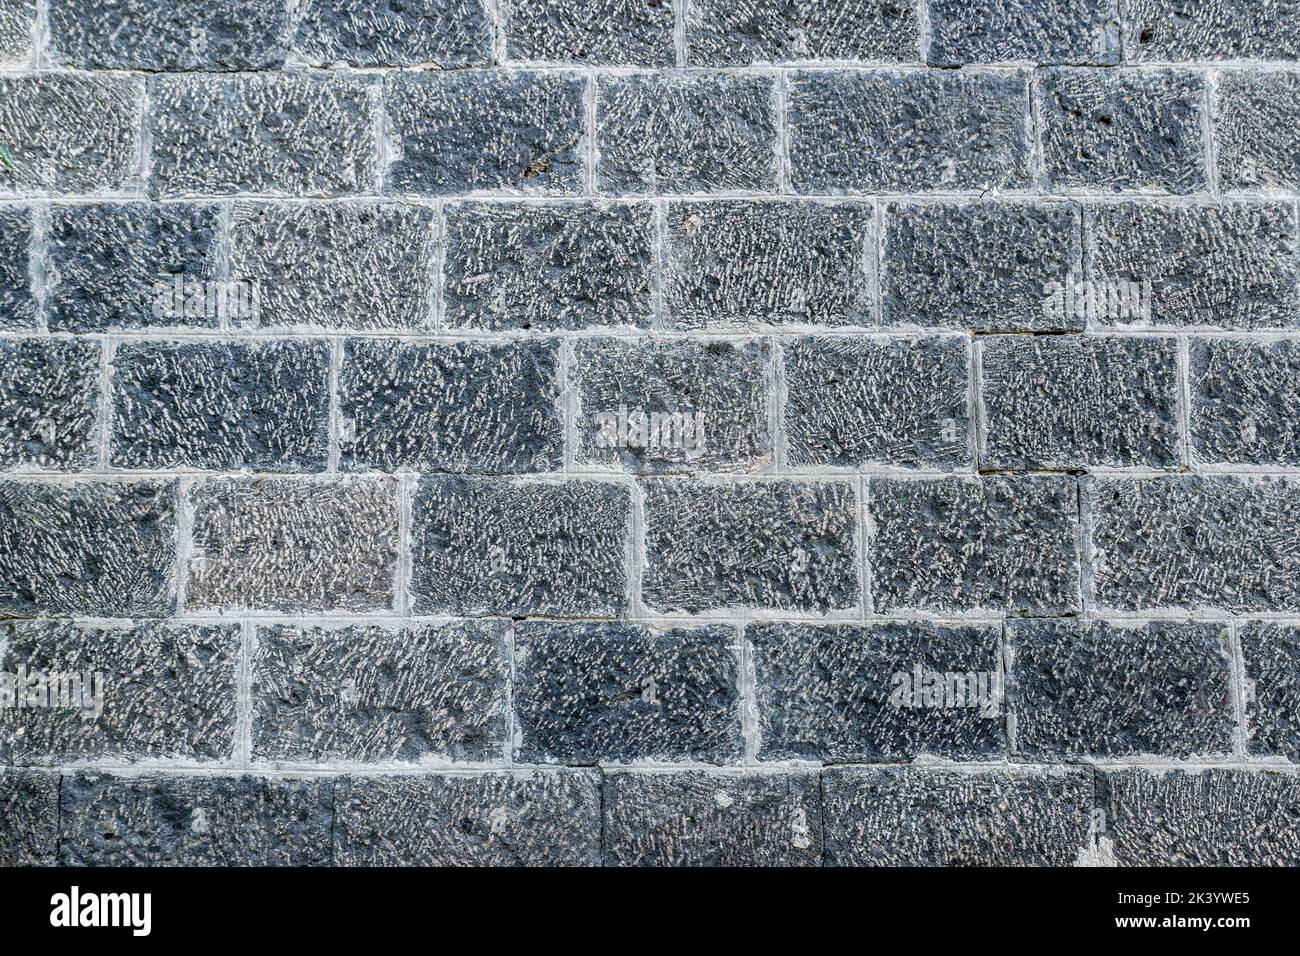 Grigio chiaro, mattoni bianchi sulla decorazione della parete per lo sfondo. Strutture in mattoni di pietra. Foto di alta qualità Foto Stock